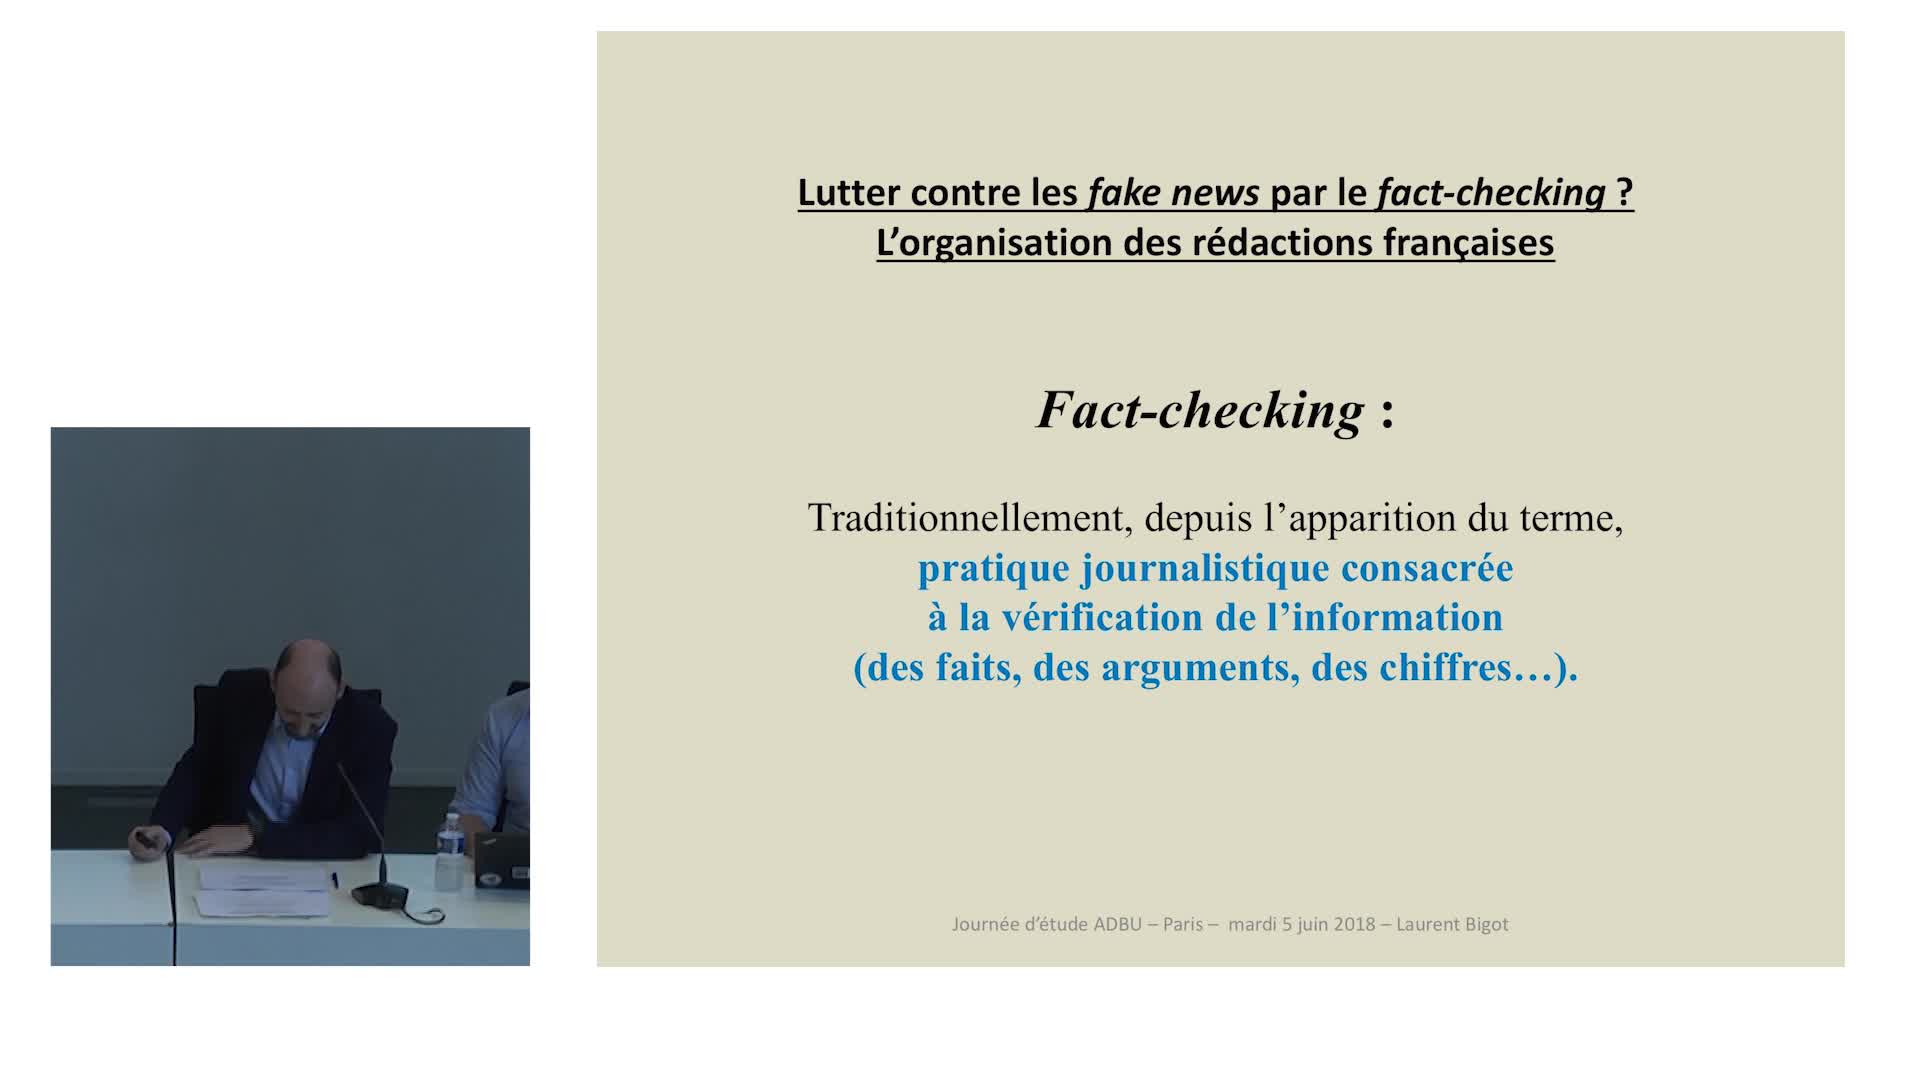 Lutter contre les fake news par le fact checking ? L’organisation des rédactions françaises